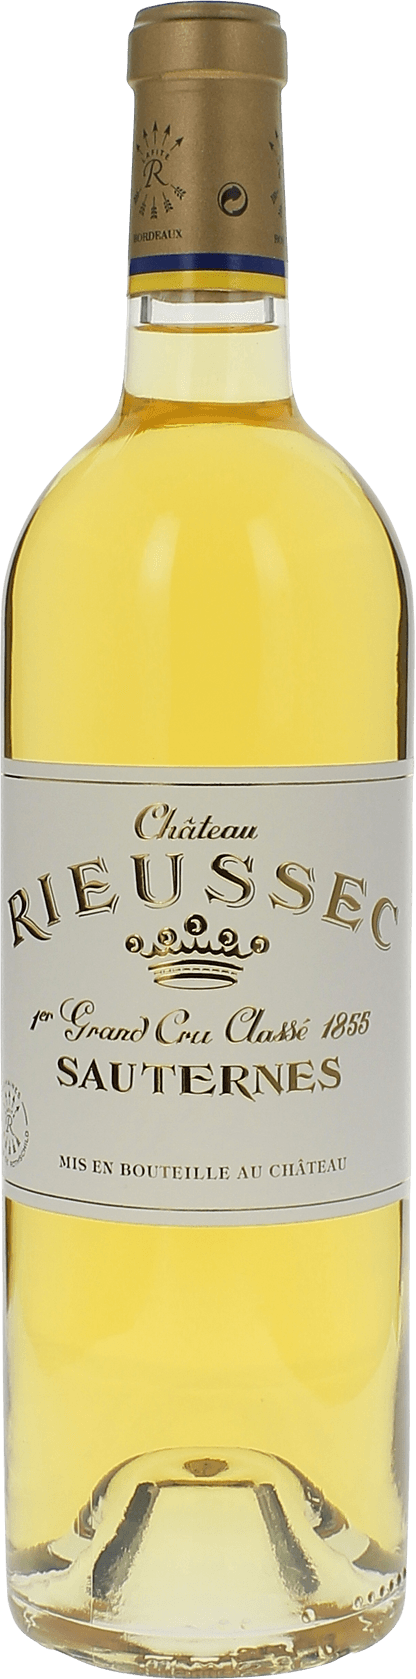 Rieussec 2017 1er cru Sauternes, Bordeaux blanc